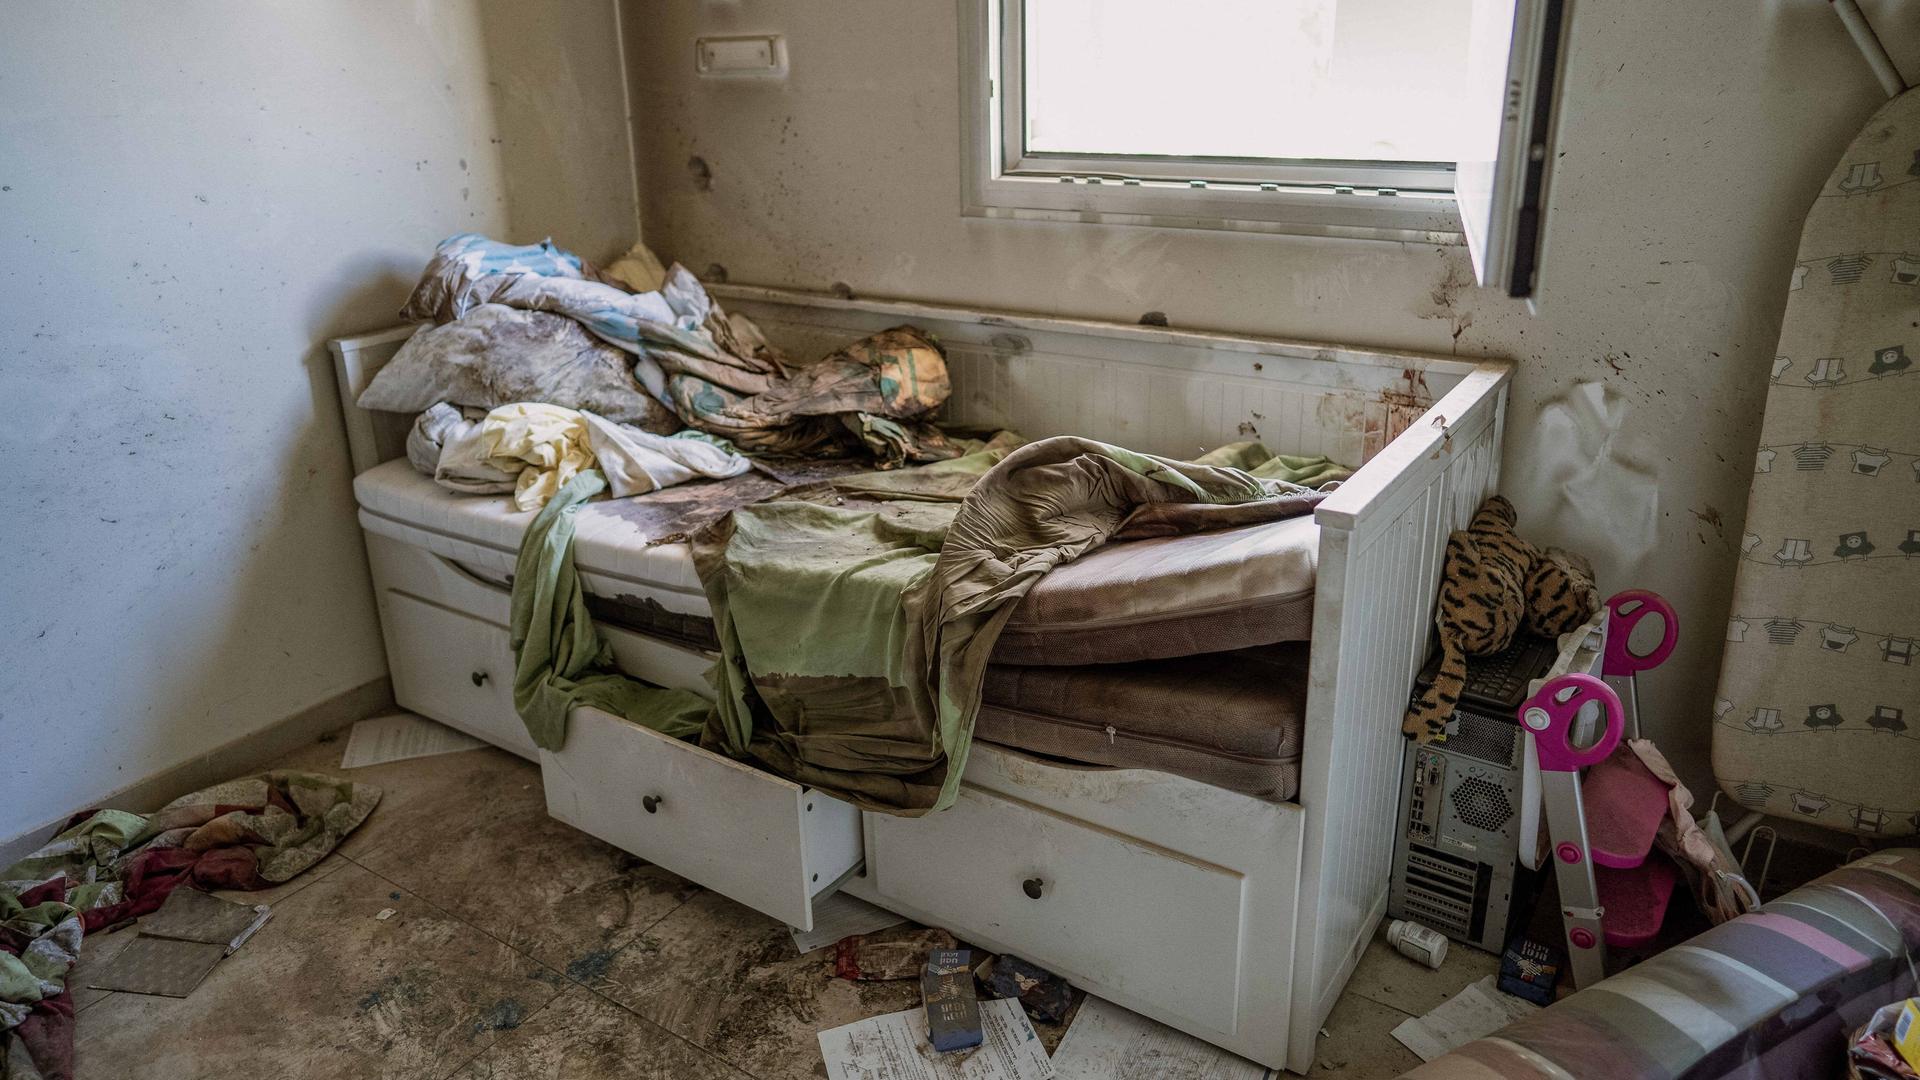 Das Bild zeigt ein zerstörtes Bett in einem Wohnraum. Die Matratze ist herausgerissen und verschmutzt, die Schubladen halb geöffnet. An der Wand sind Einschusslöcher zu sehen.  